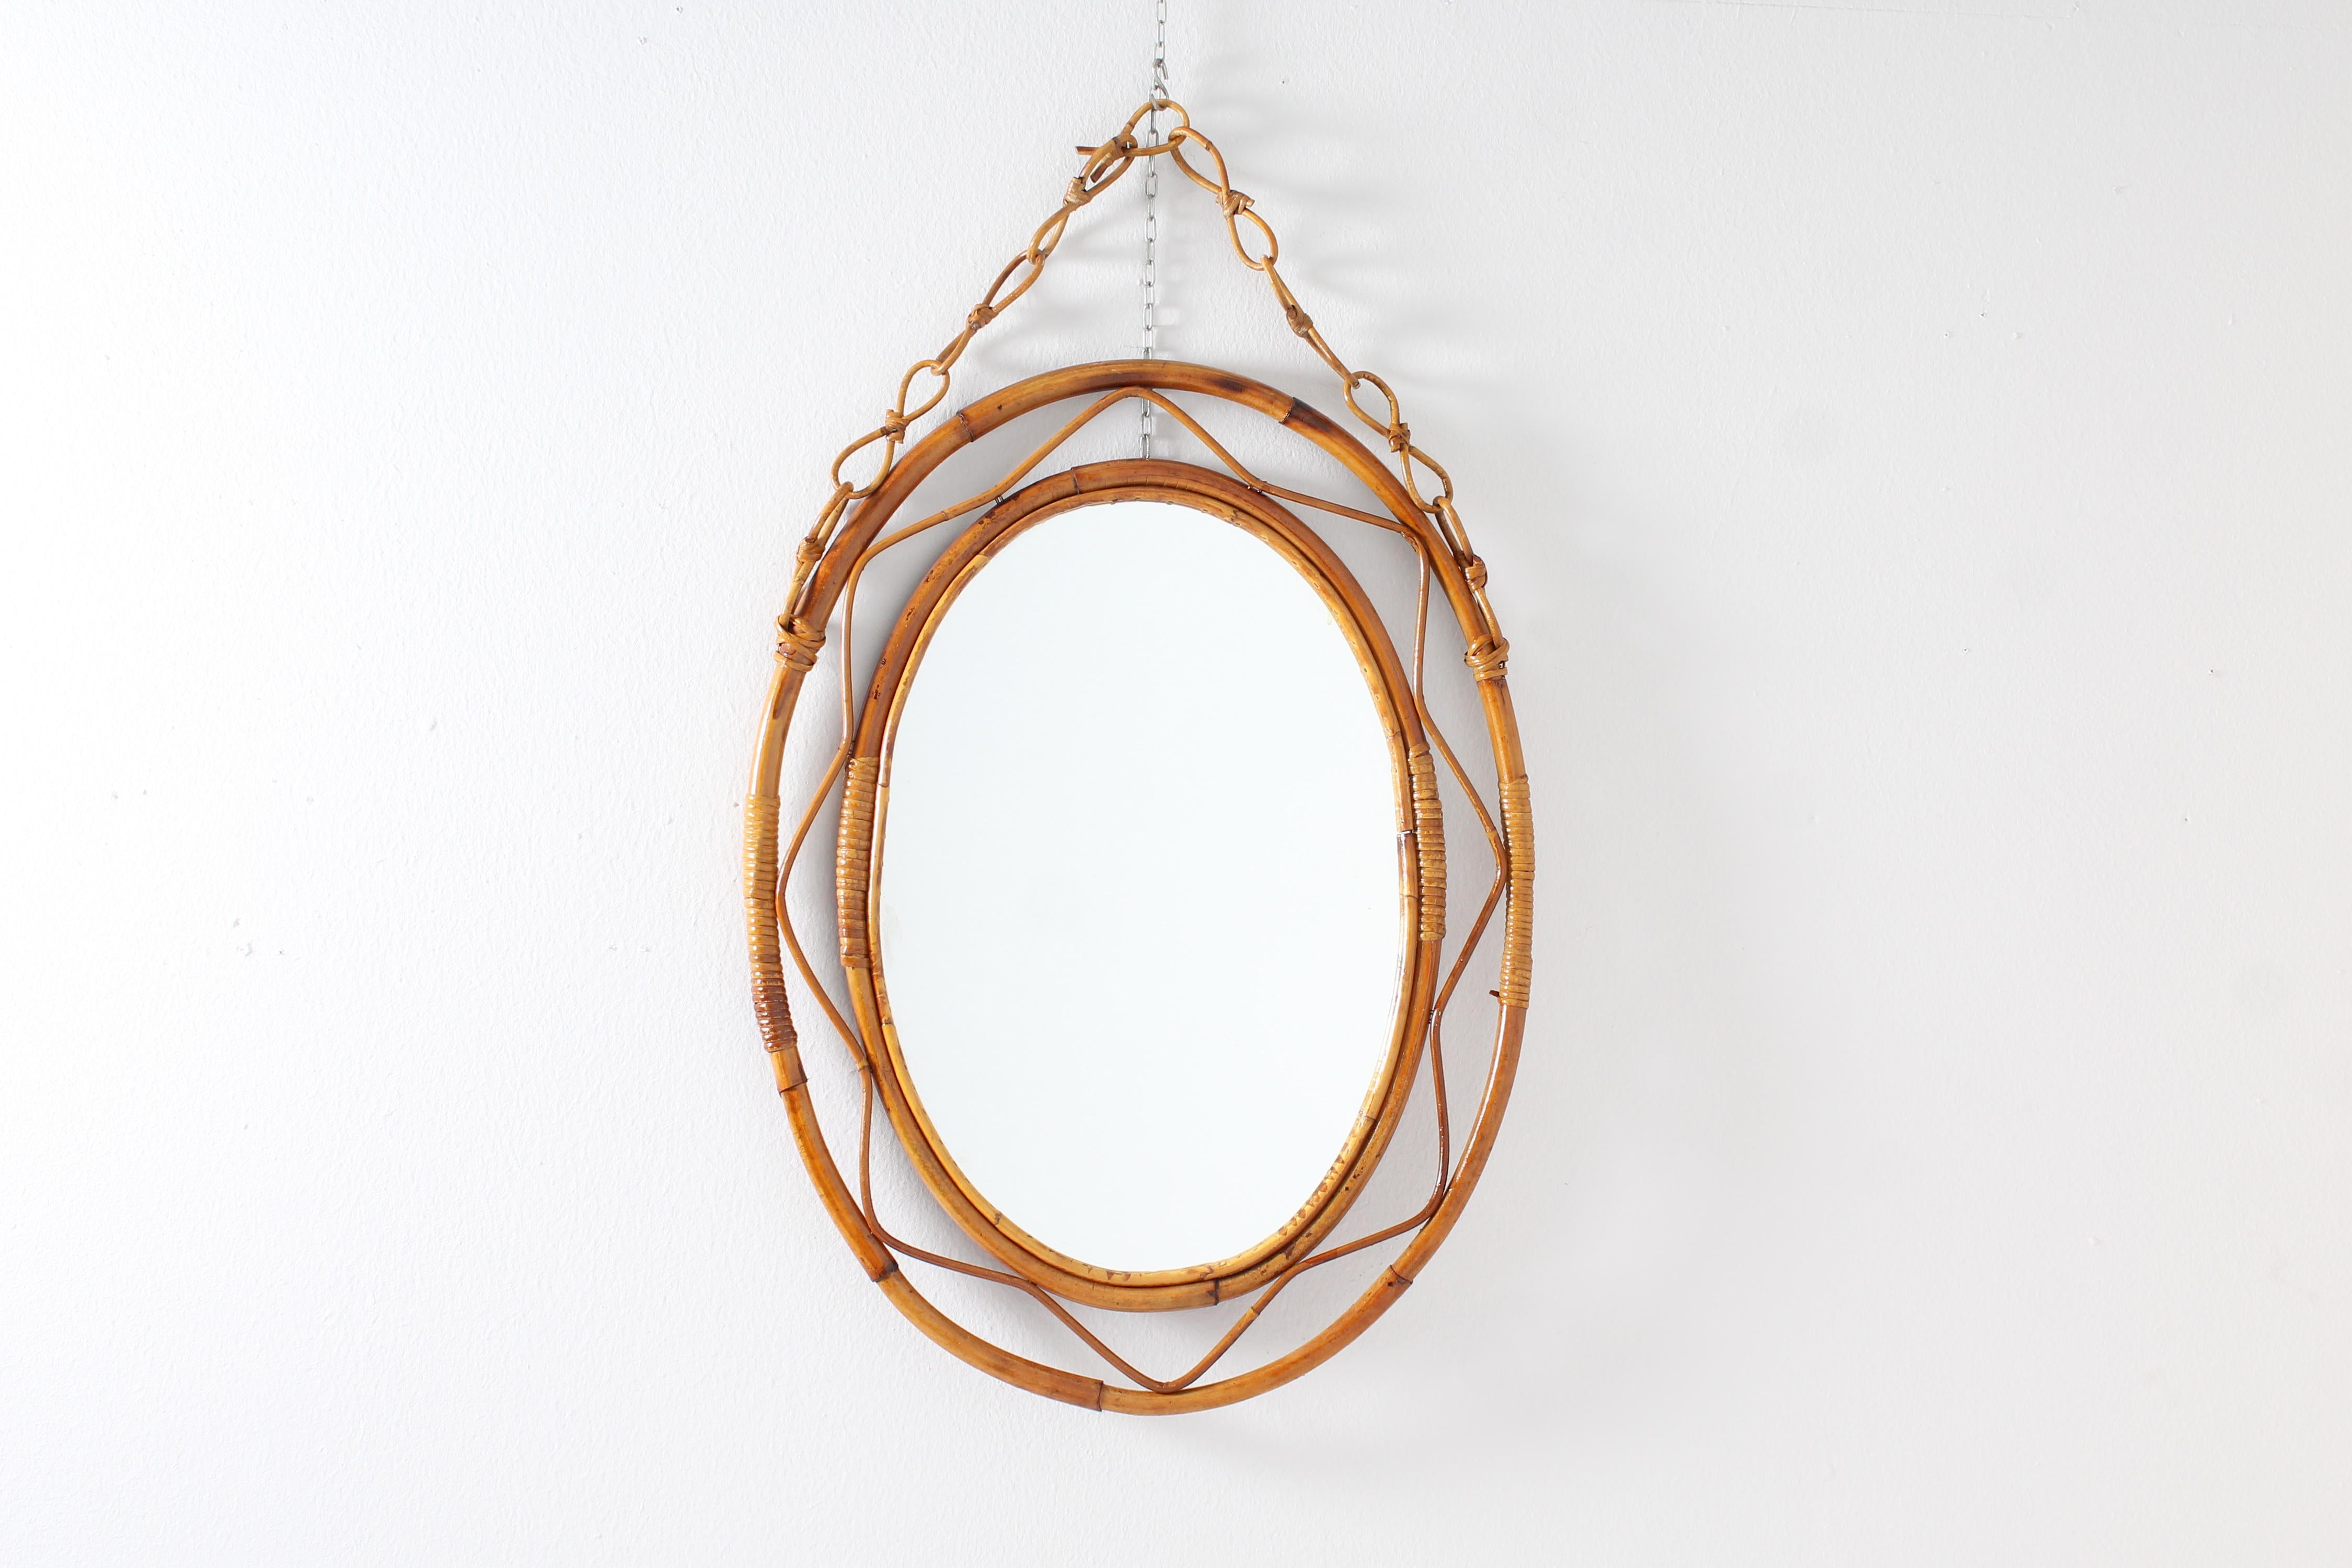 Stilvoller ovaler Spiegel mit doppeltem Rahmen und Kette aus gebogenem Bambusrohr und Weidenbandelementen. Italienische Herstellung, die Bonacina zuzuschreiben ist, 1960er Jahre.
Alters- und gebrauchsbedingte Abnutzungserscheinungen.